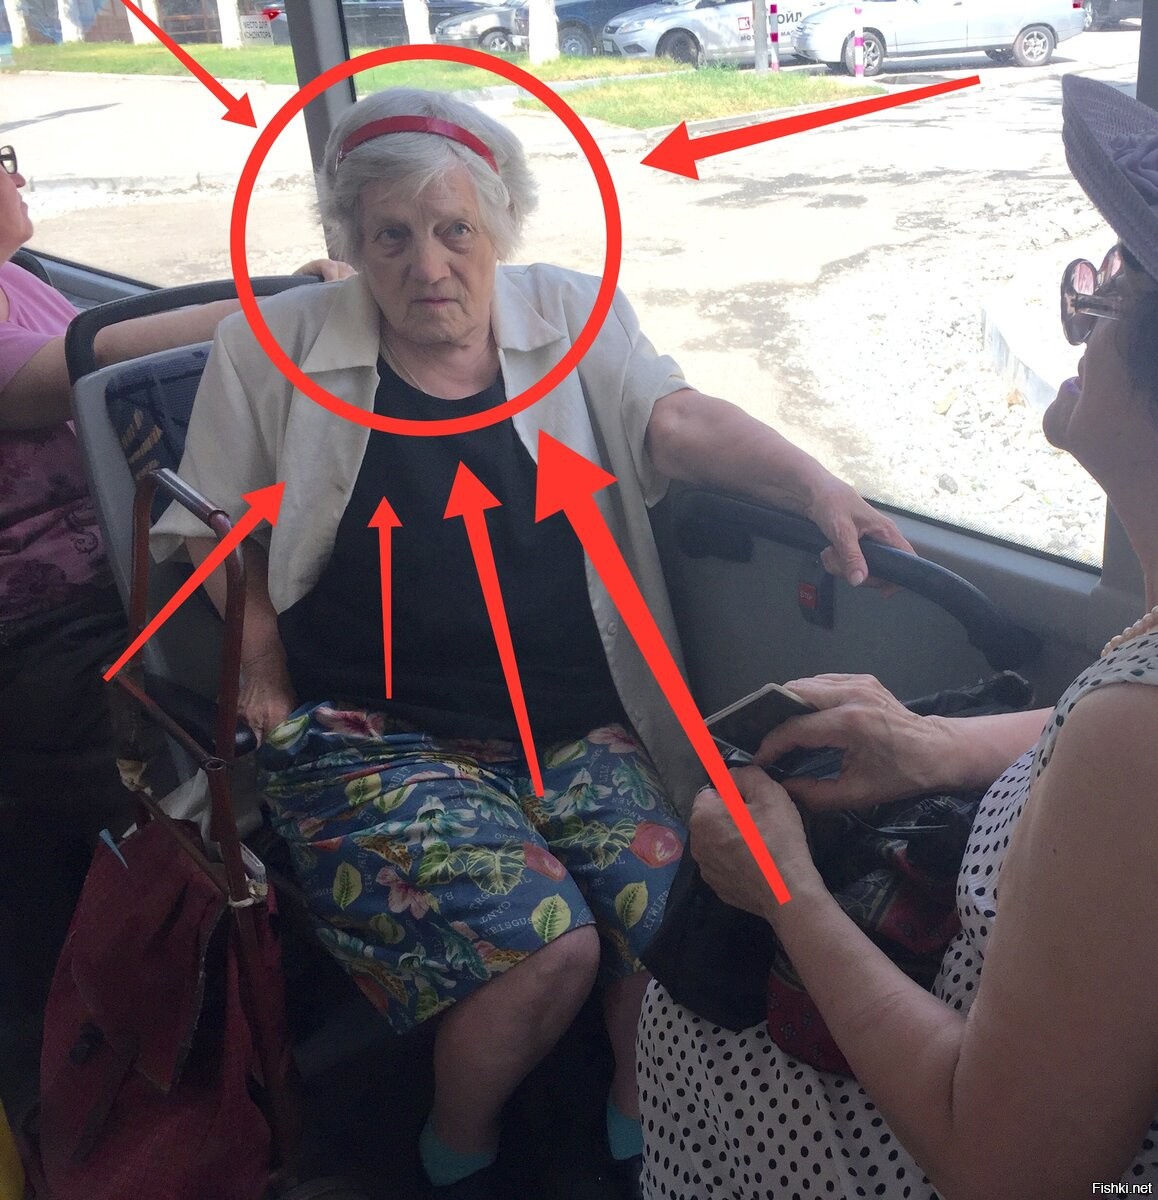 Чувак достал большой хер в метро а бабка напротив смотрит на него